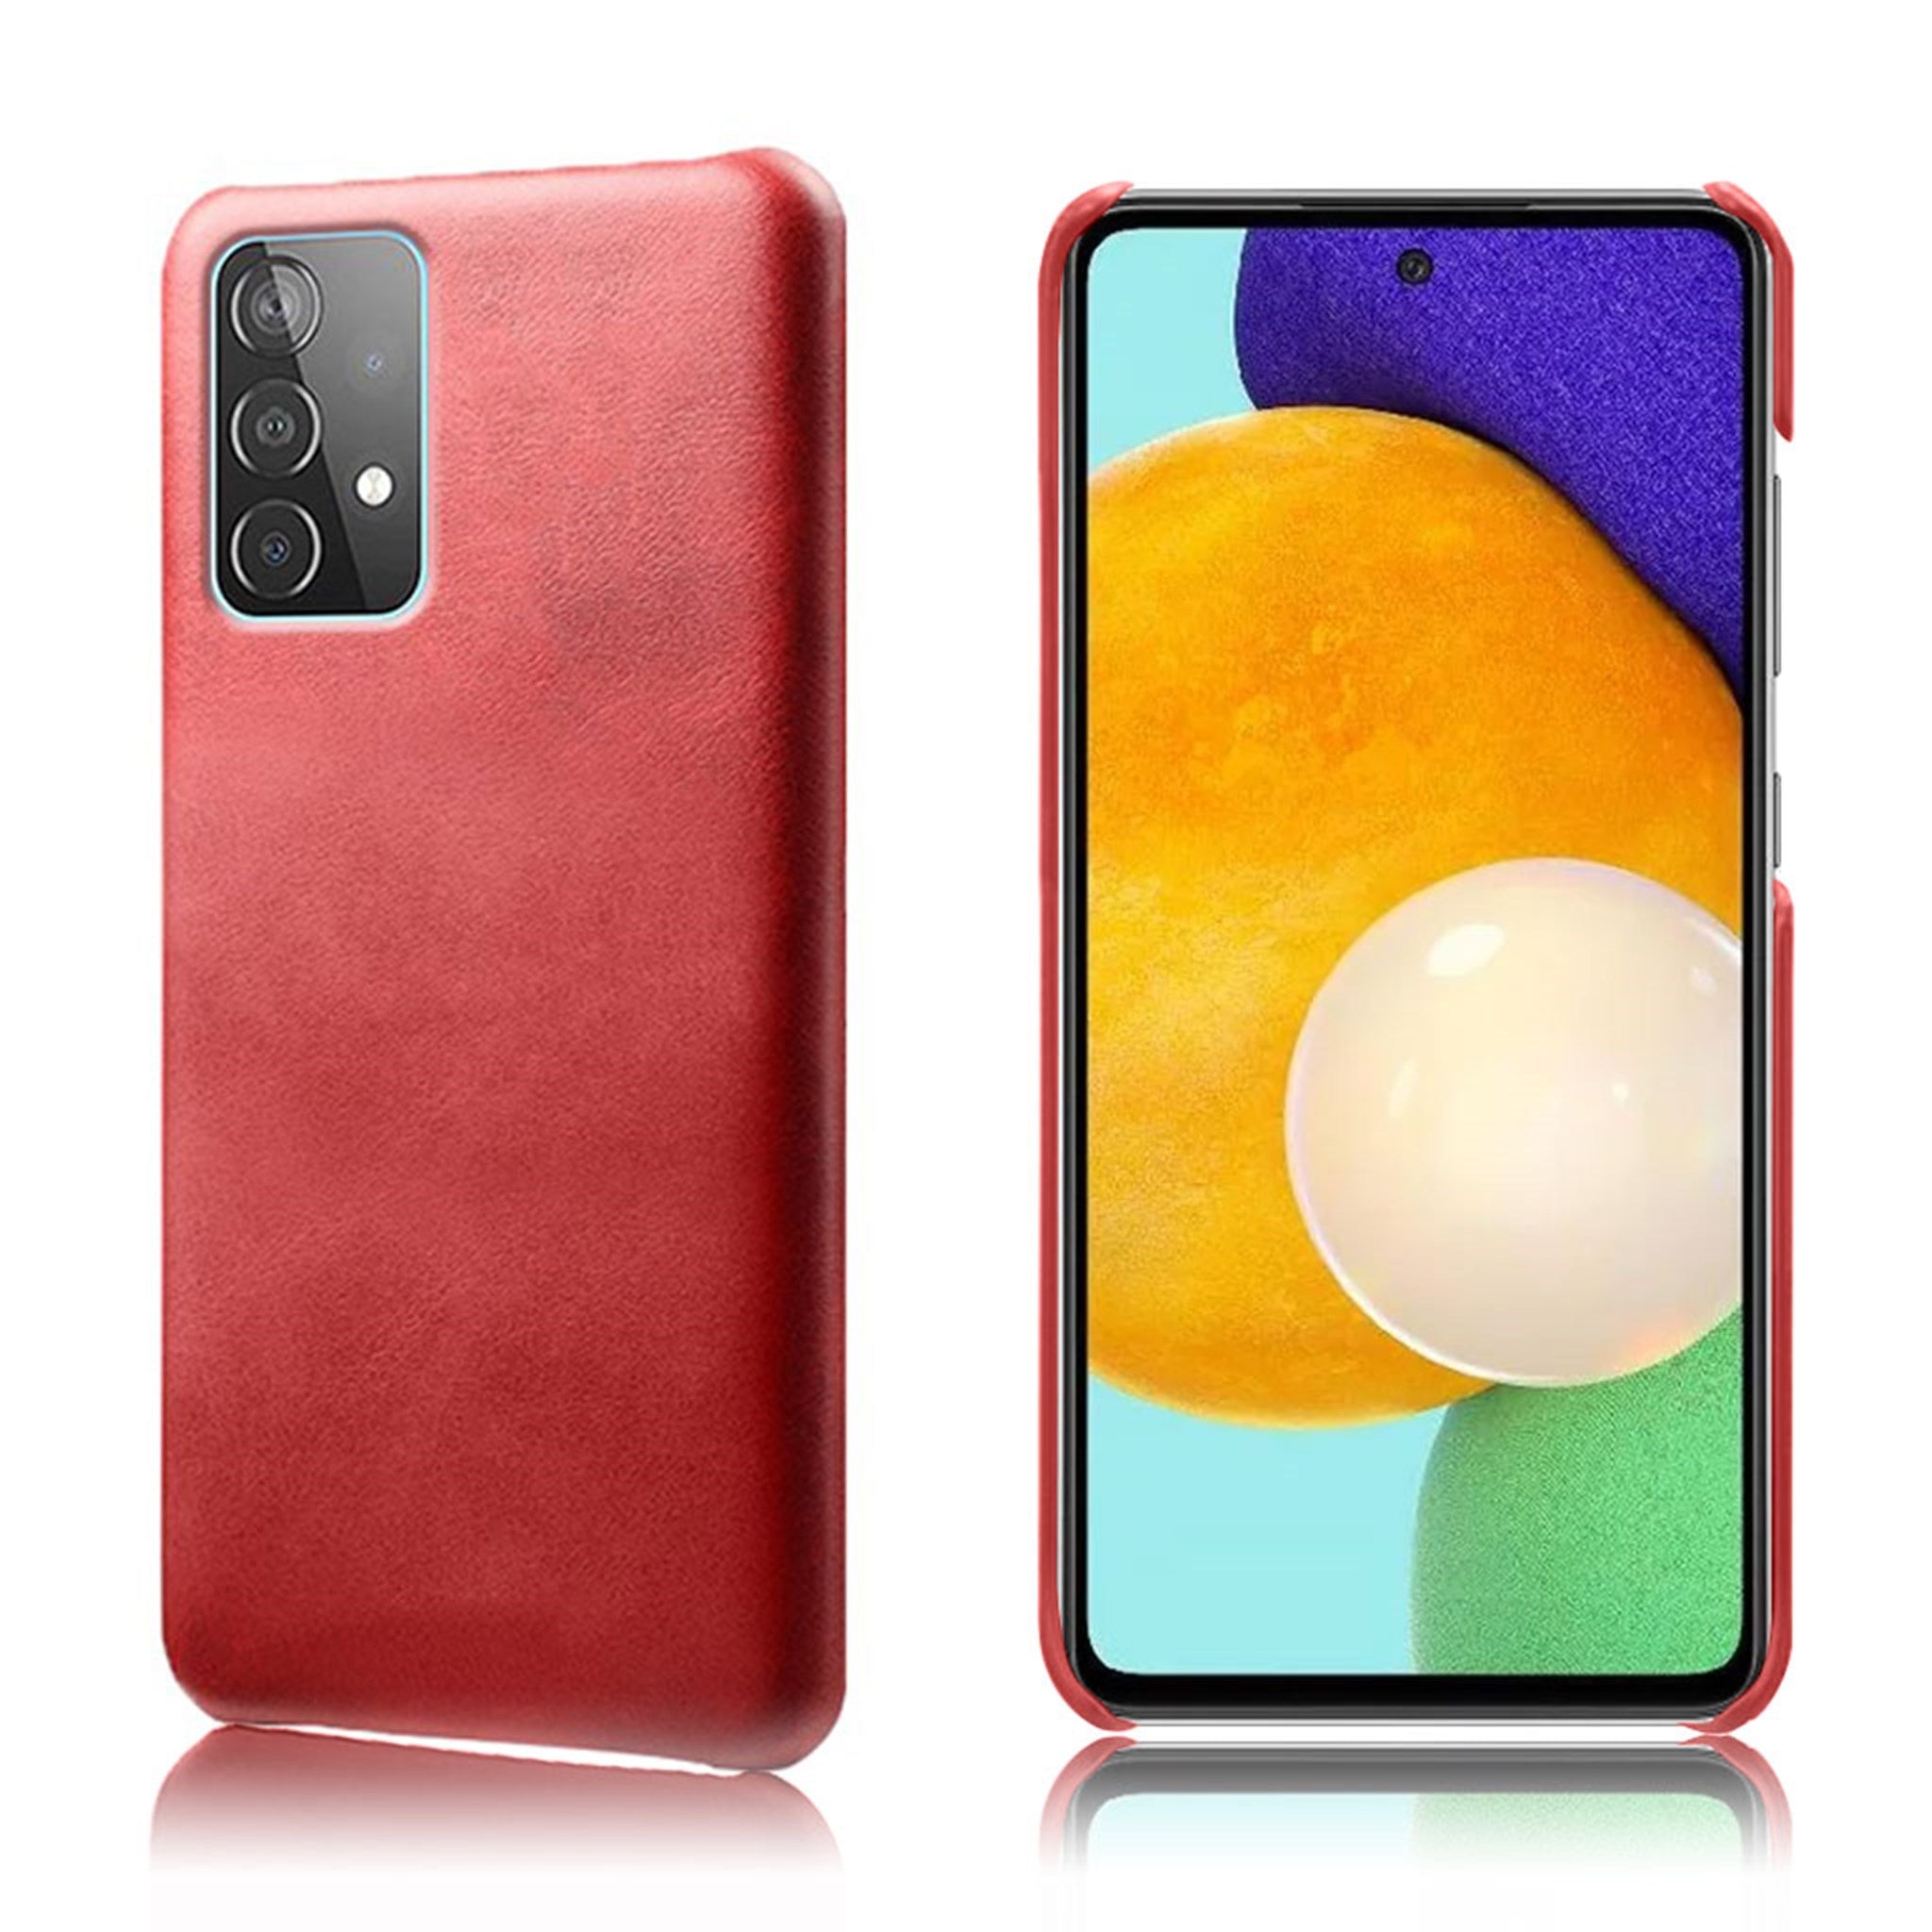 Prestige case - Samsung Galaxy A52 5G - Red